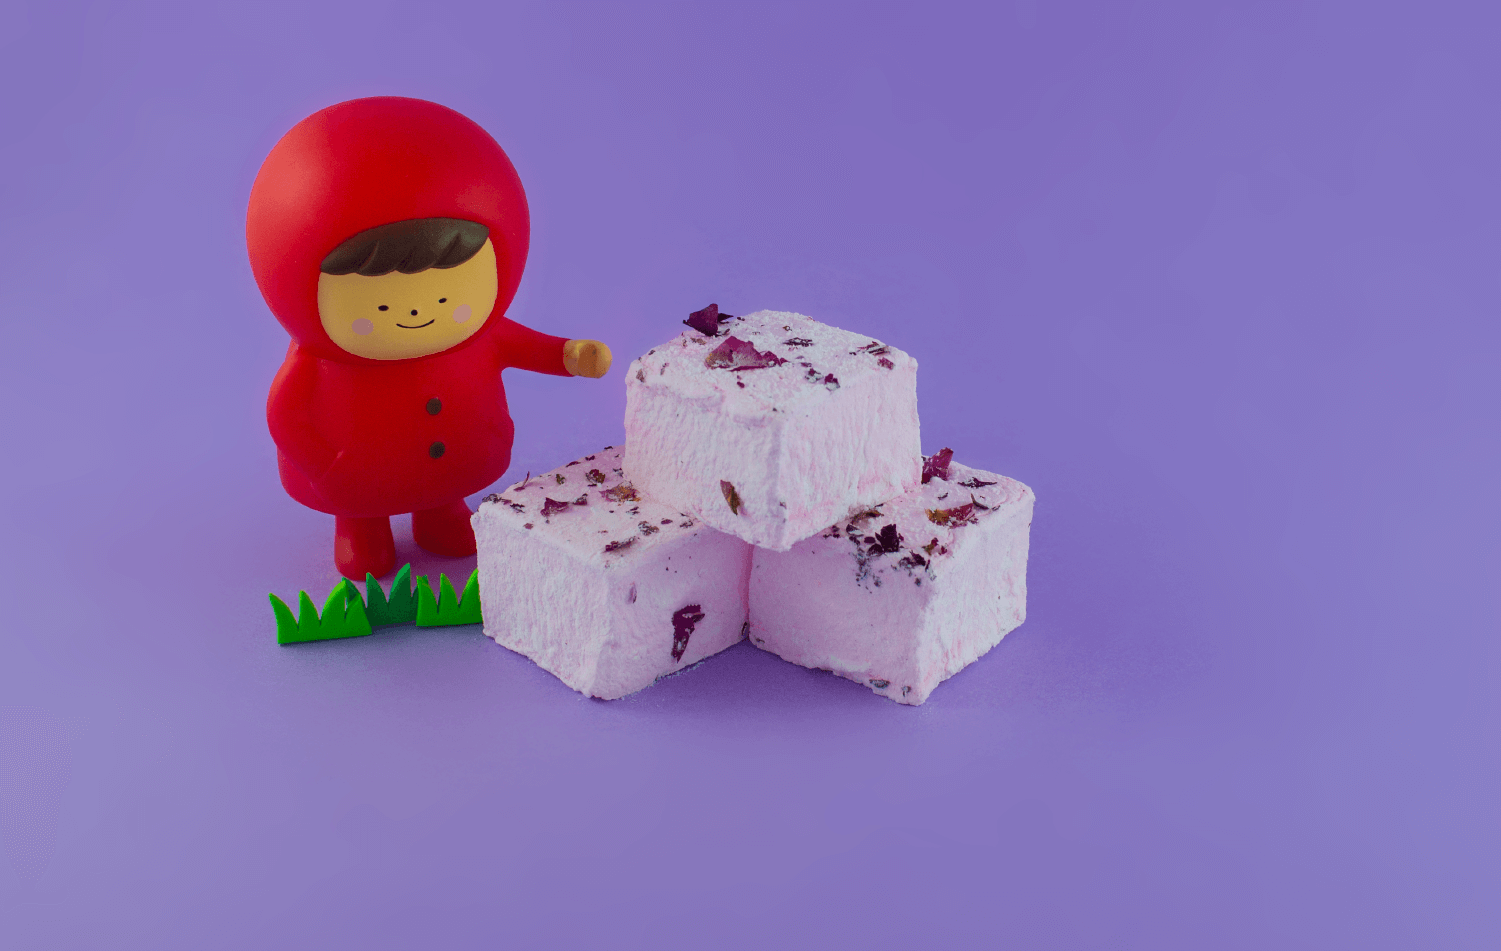 blushing rose marshmallows